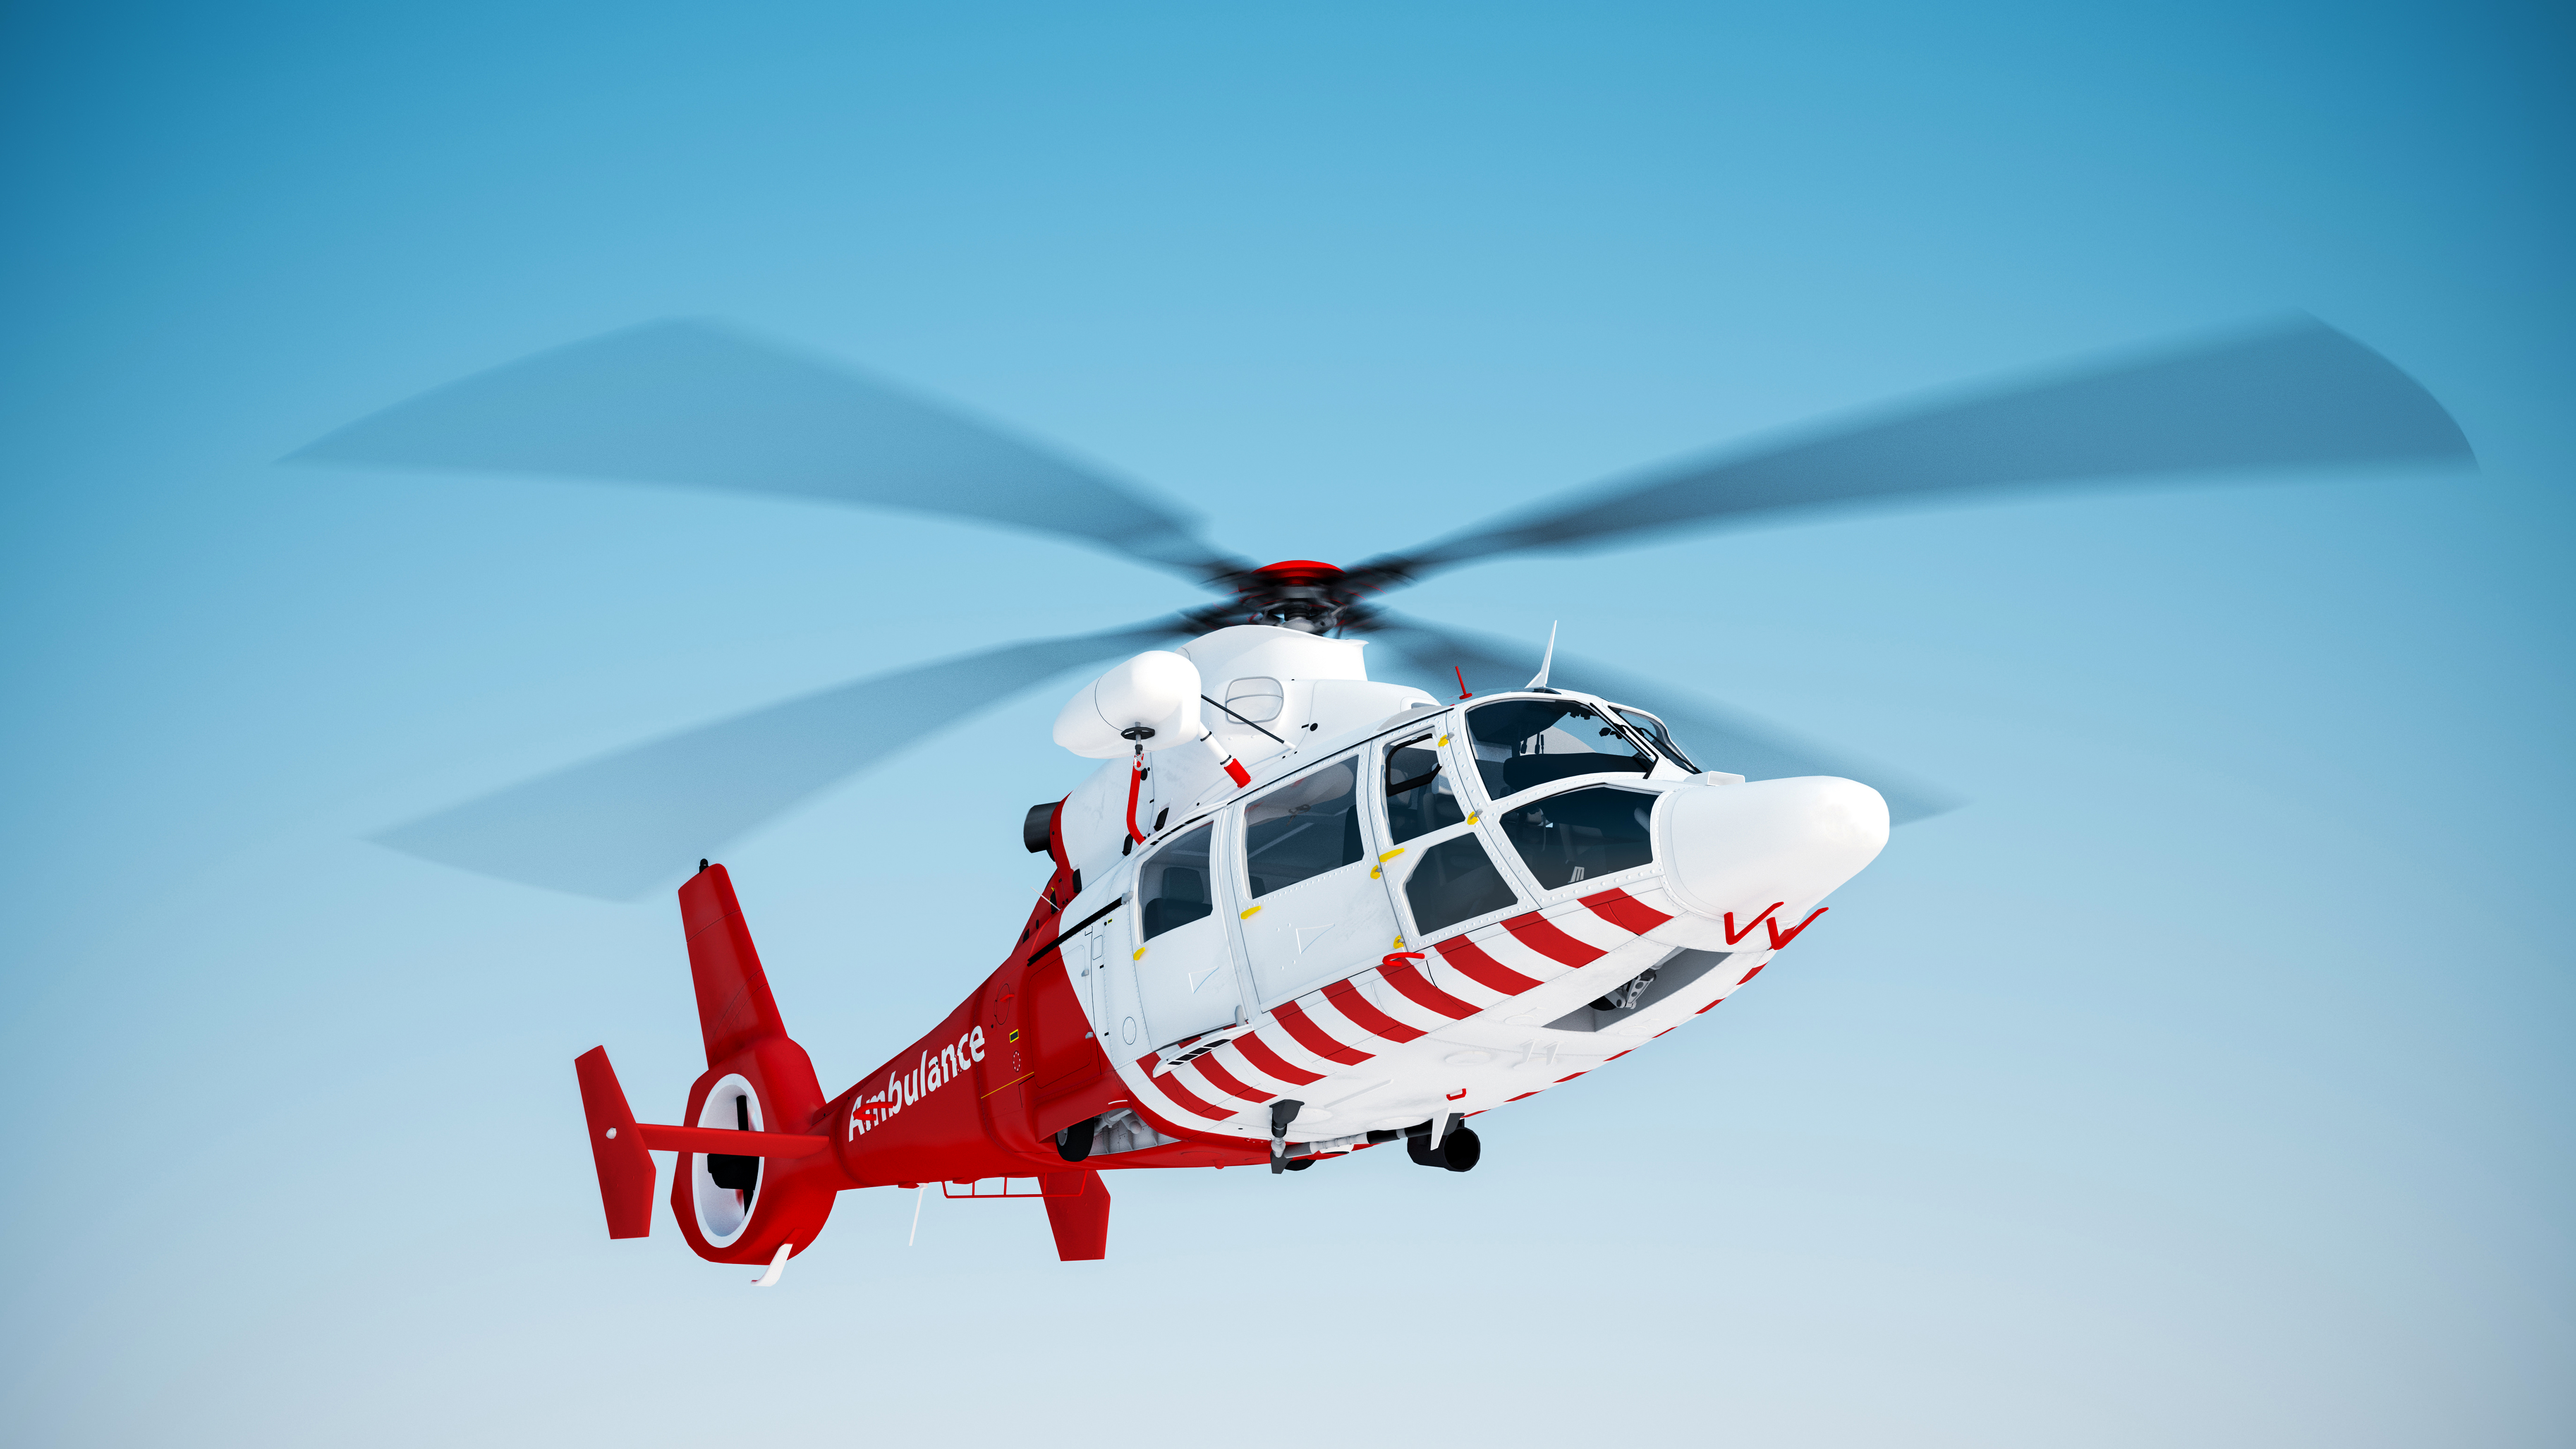 вертолет горы спасательный helicopter mountains rescue скачать